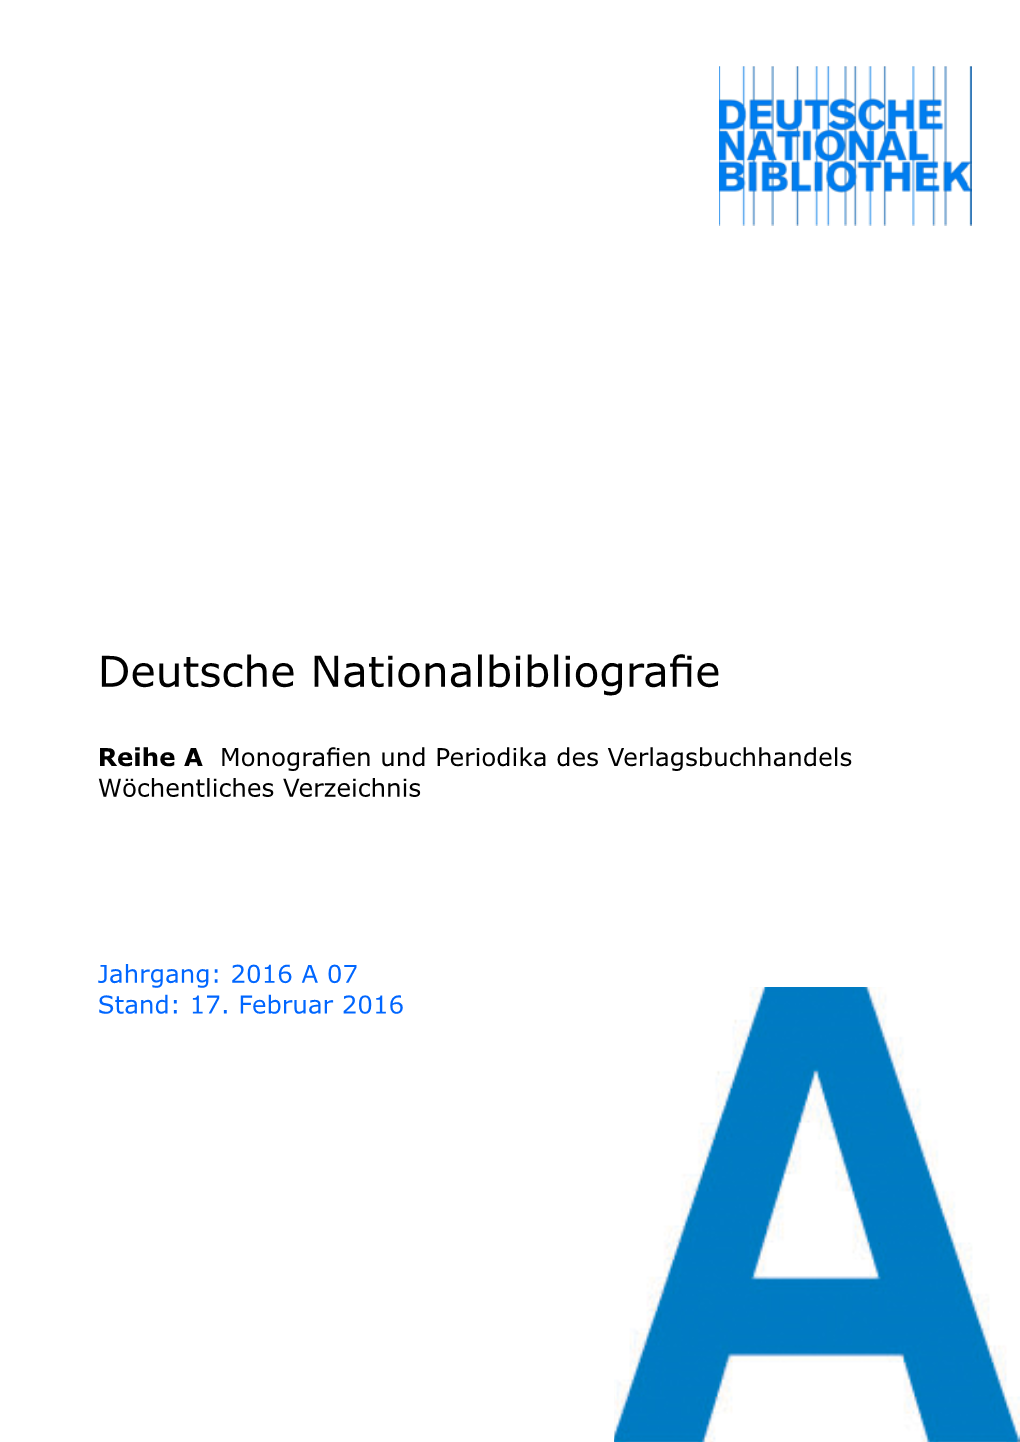 Deutsche Nationalbibliografie 2016 a 07